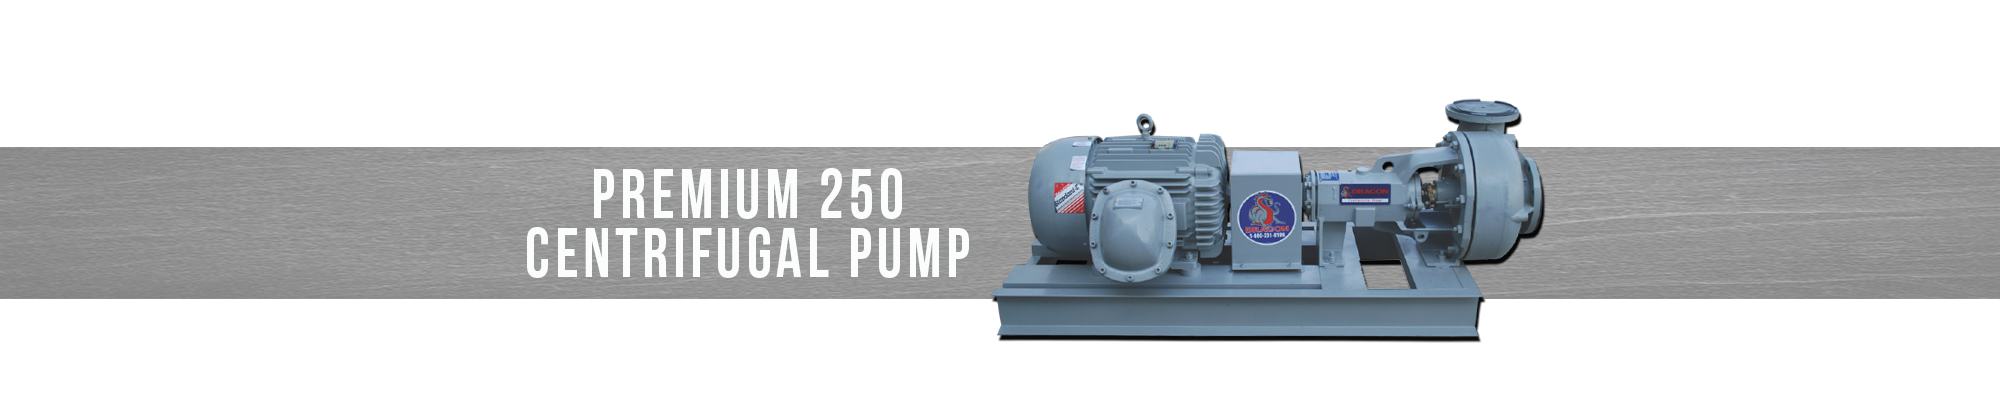 Premium 250 Centrifugal Pump